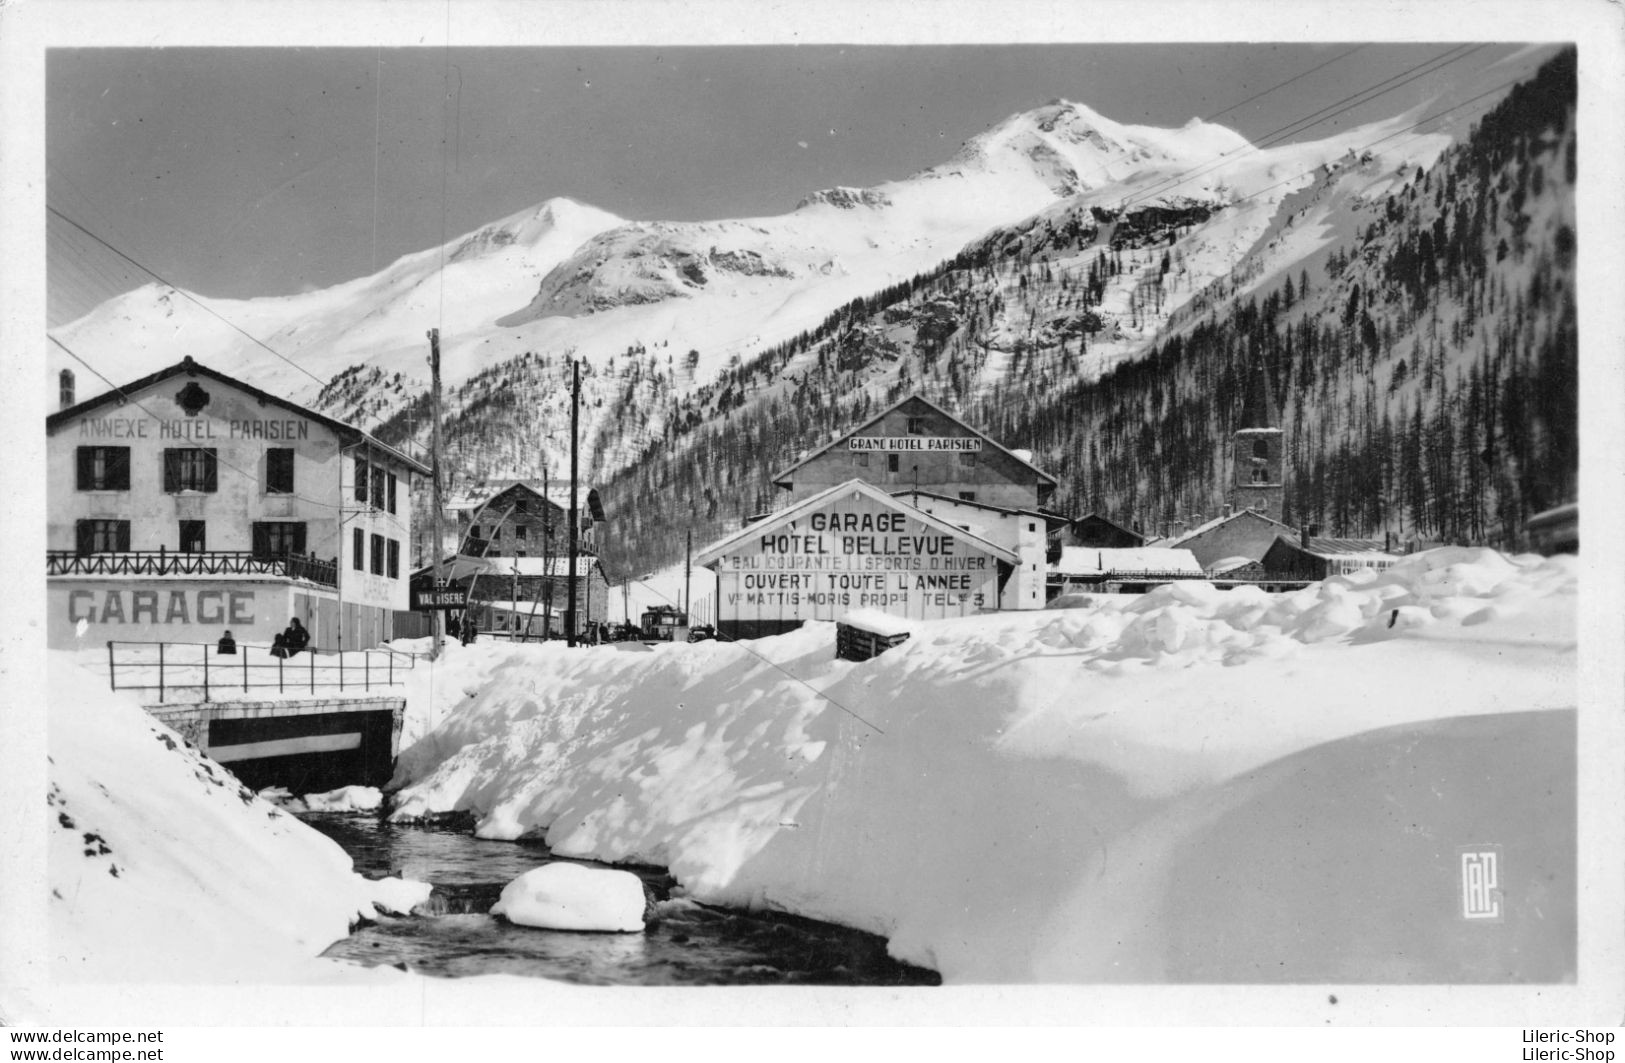 Val D'Isère (73)Le Village, Les Hôtels Et L'Iseran Cpsm ± 1960 - Val D'Isere